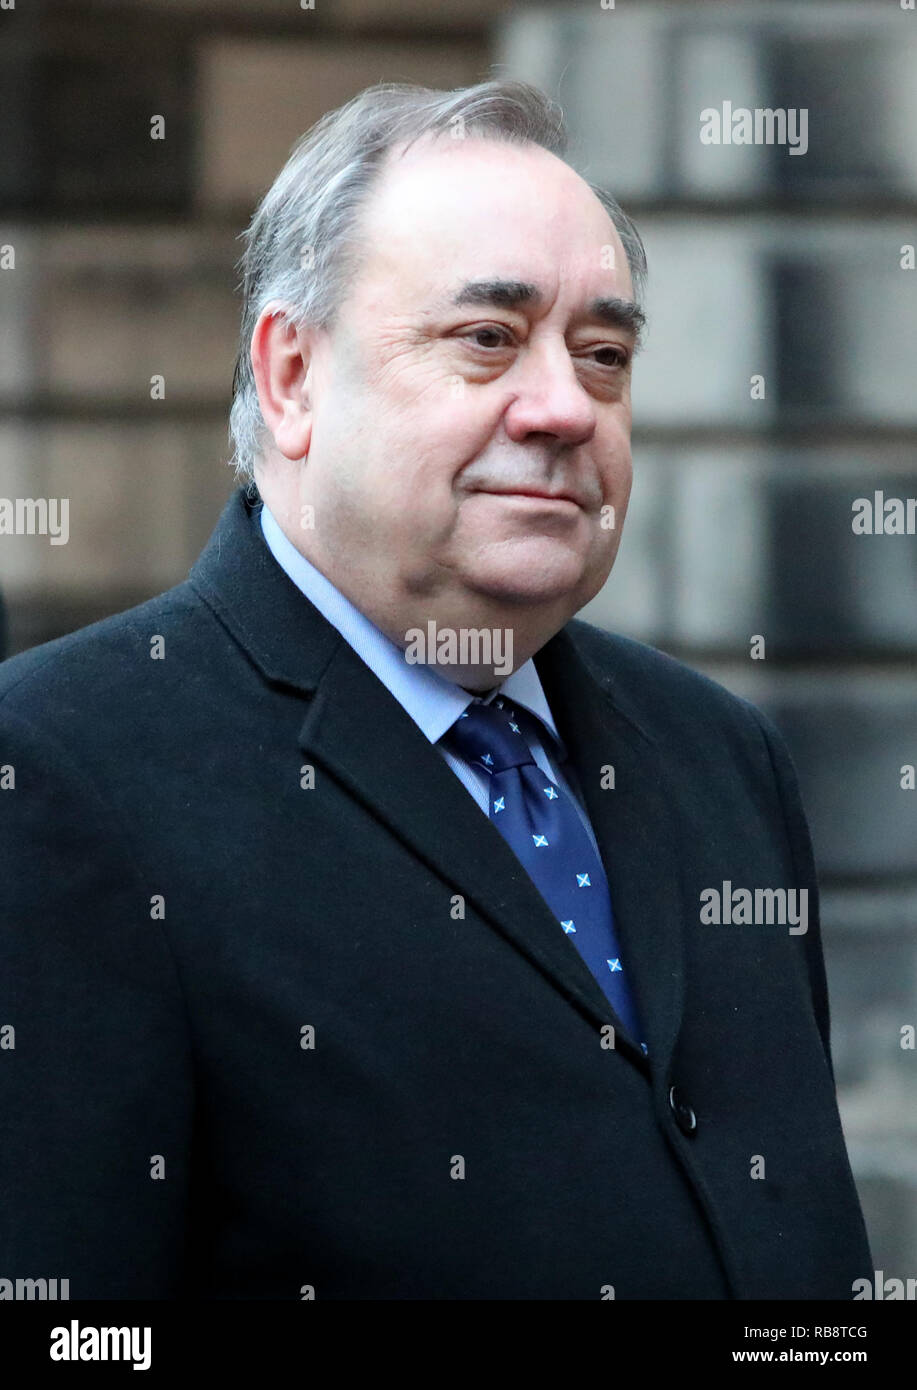 Alex Salmond arrivant à la Cour de session à Edimbourg pour l'ancien premier ministre défi juridique contre le gouvernement écossais a traité une plainte d'inconduite contre lui. Banque D'Images